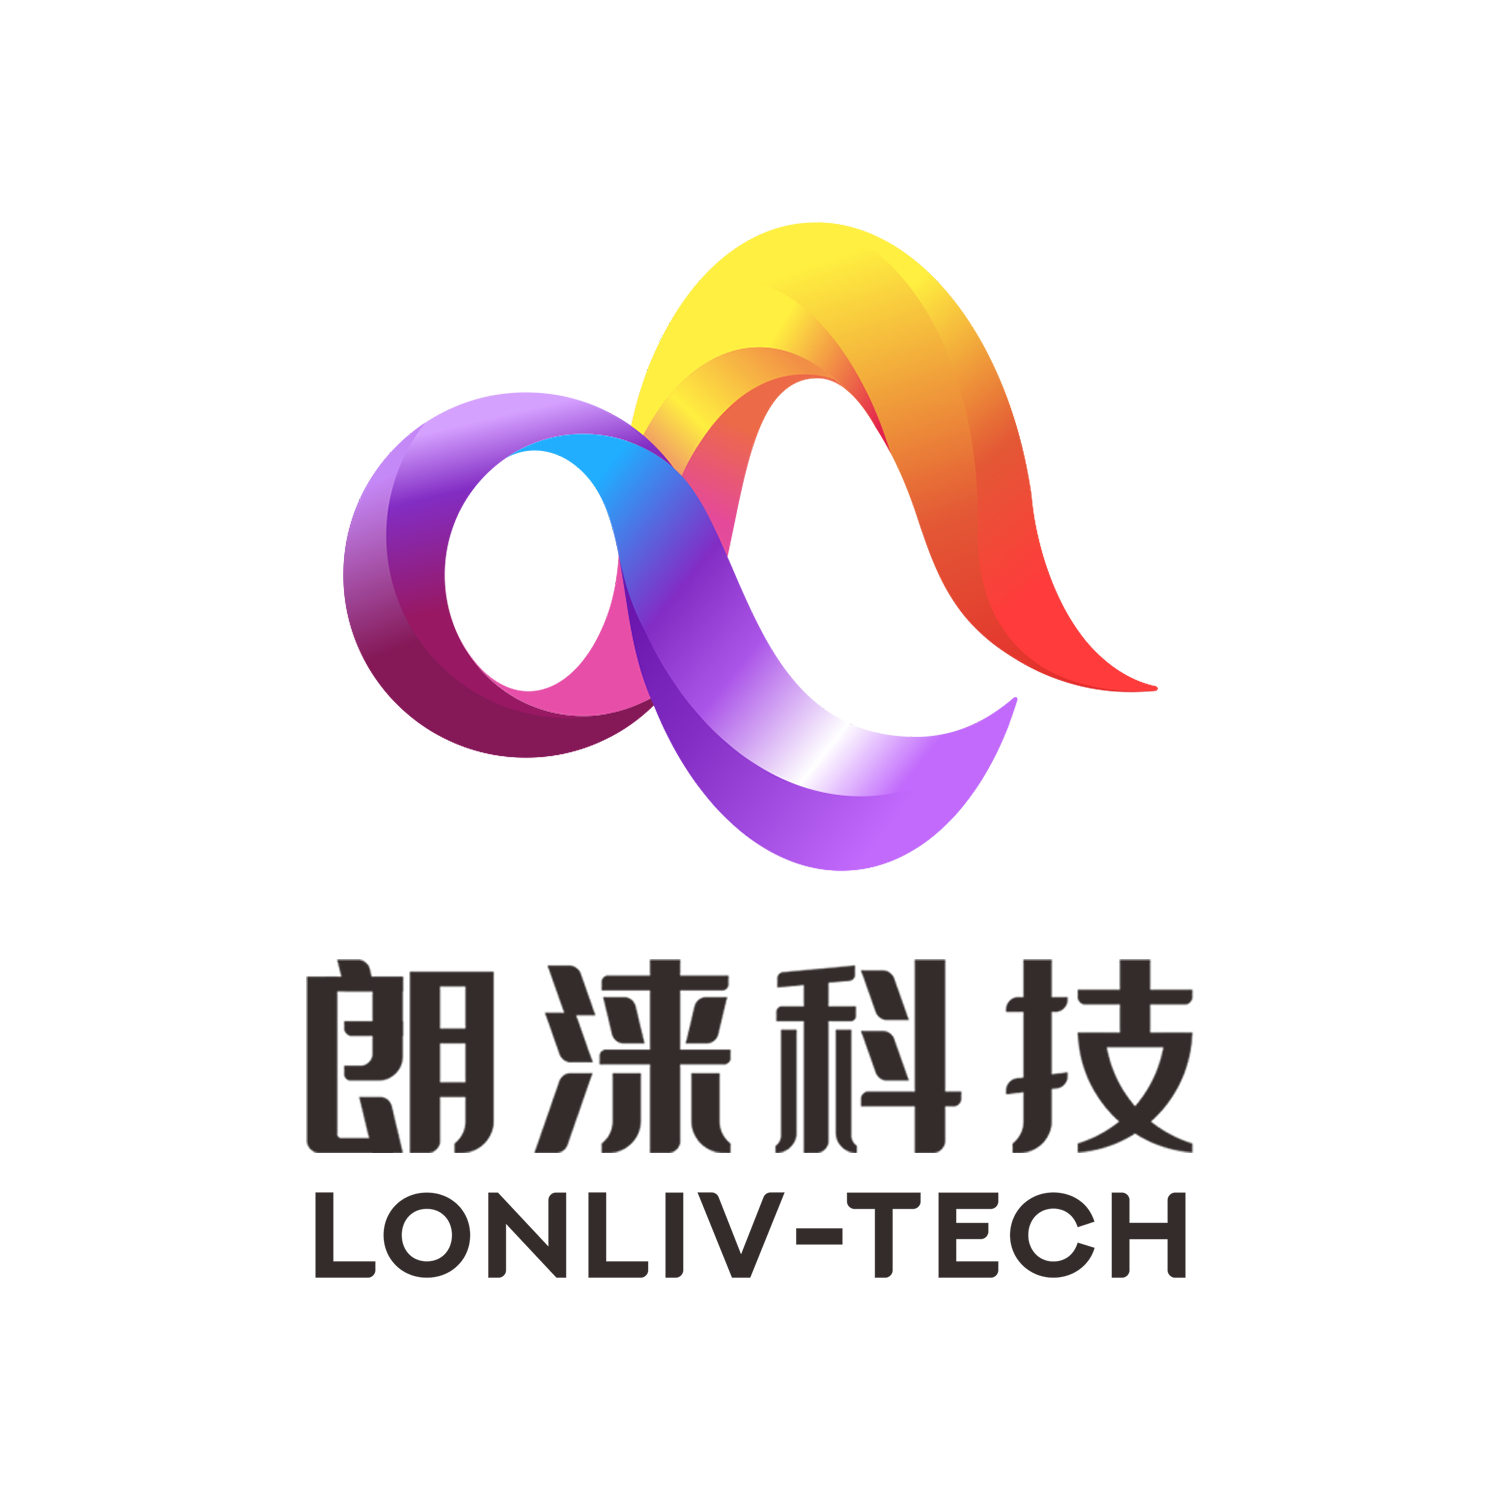 Lonliv-tech